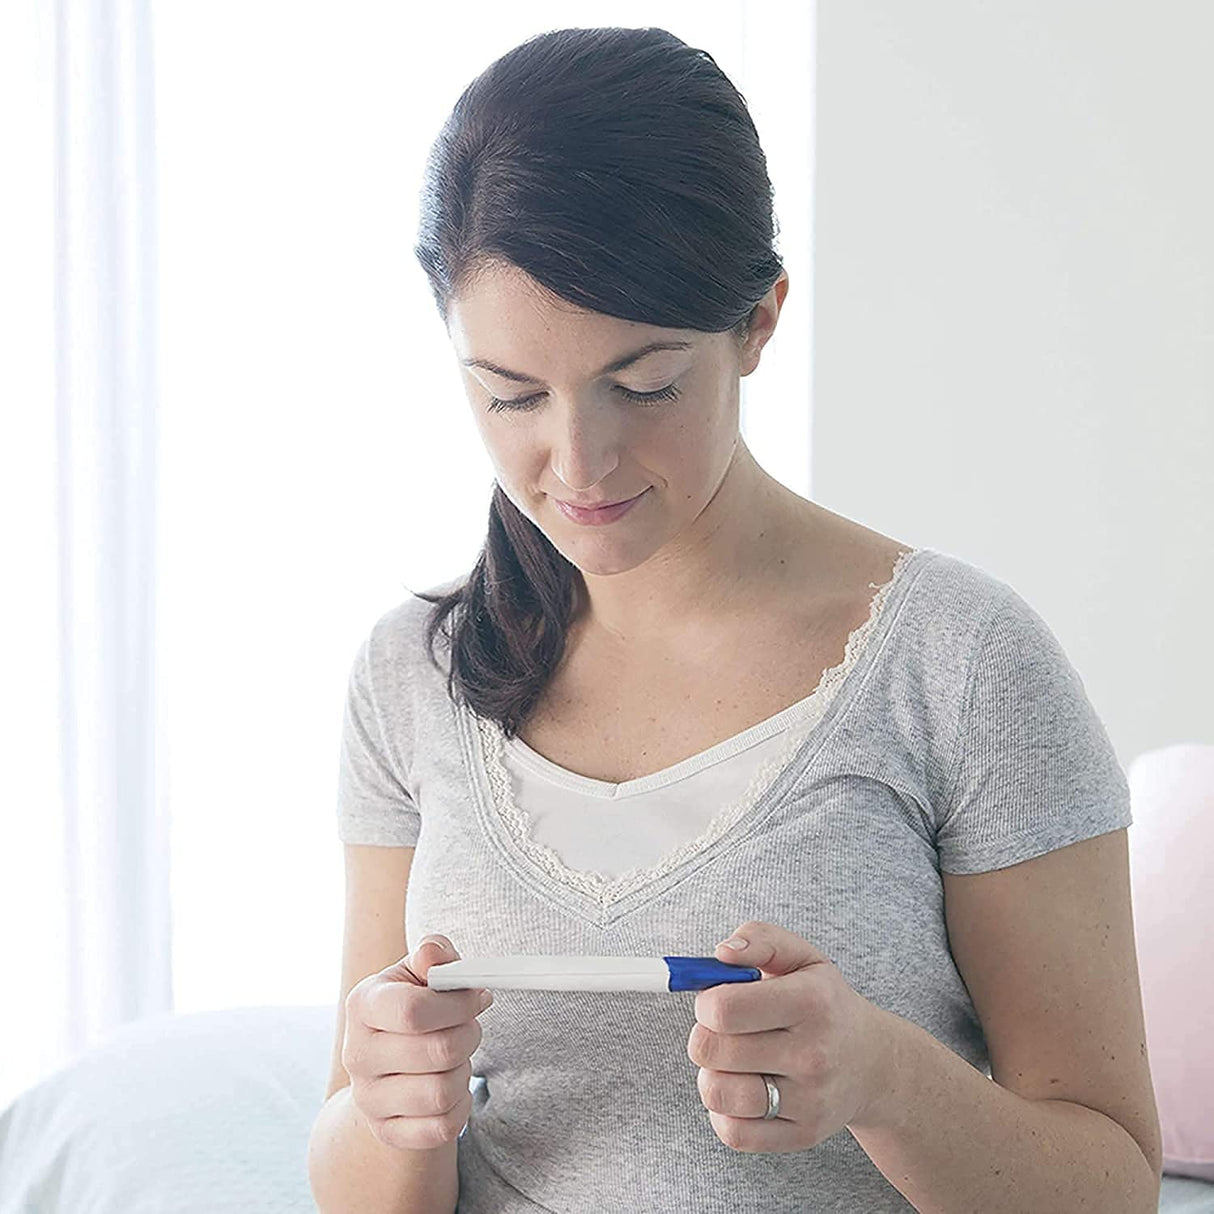 Clearblue Schwangerschaftstest Frühe Erkennung, Frühtest, Pregnancy Test, 1X Frühschwangerschaftstest / Schwangerschaftsfrühtest, Über 99 % Zuverlässig, Schwangerschaft Bestimmen,25 Miu/Ml | 1Er Pack